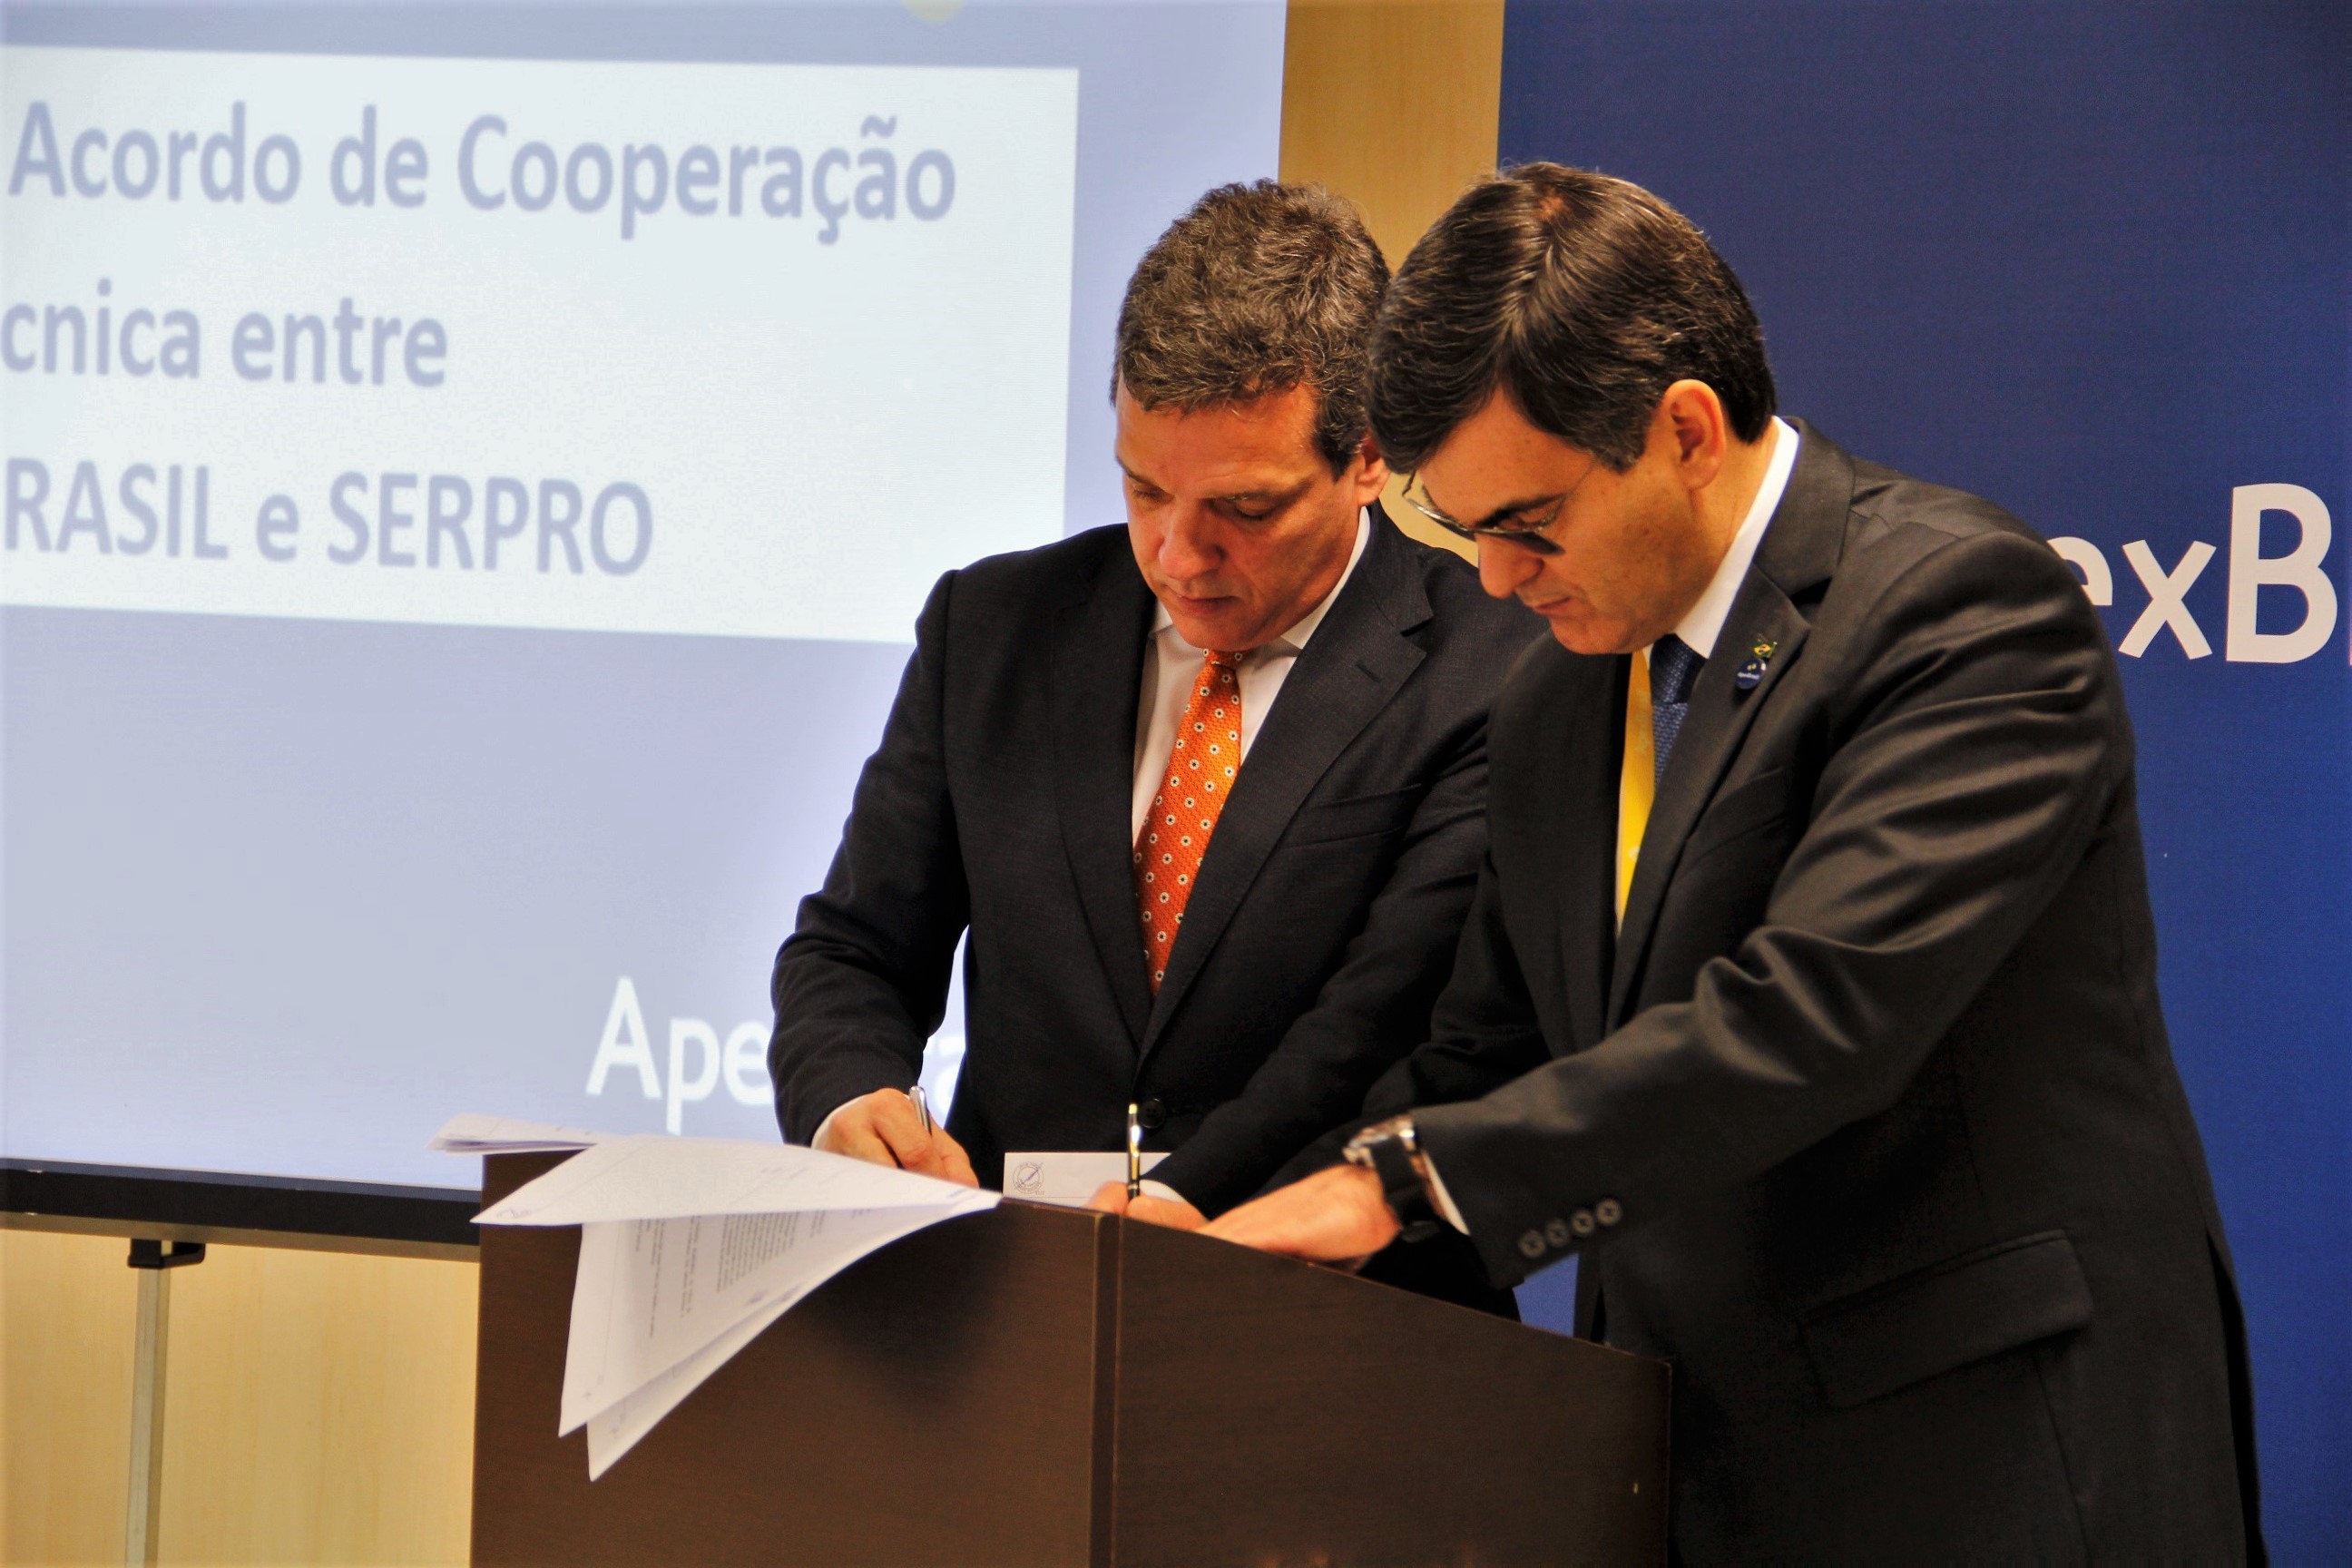 Presidente da Apex-Brasil participa de live sobre a internacionalização do Serpro